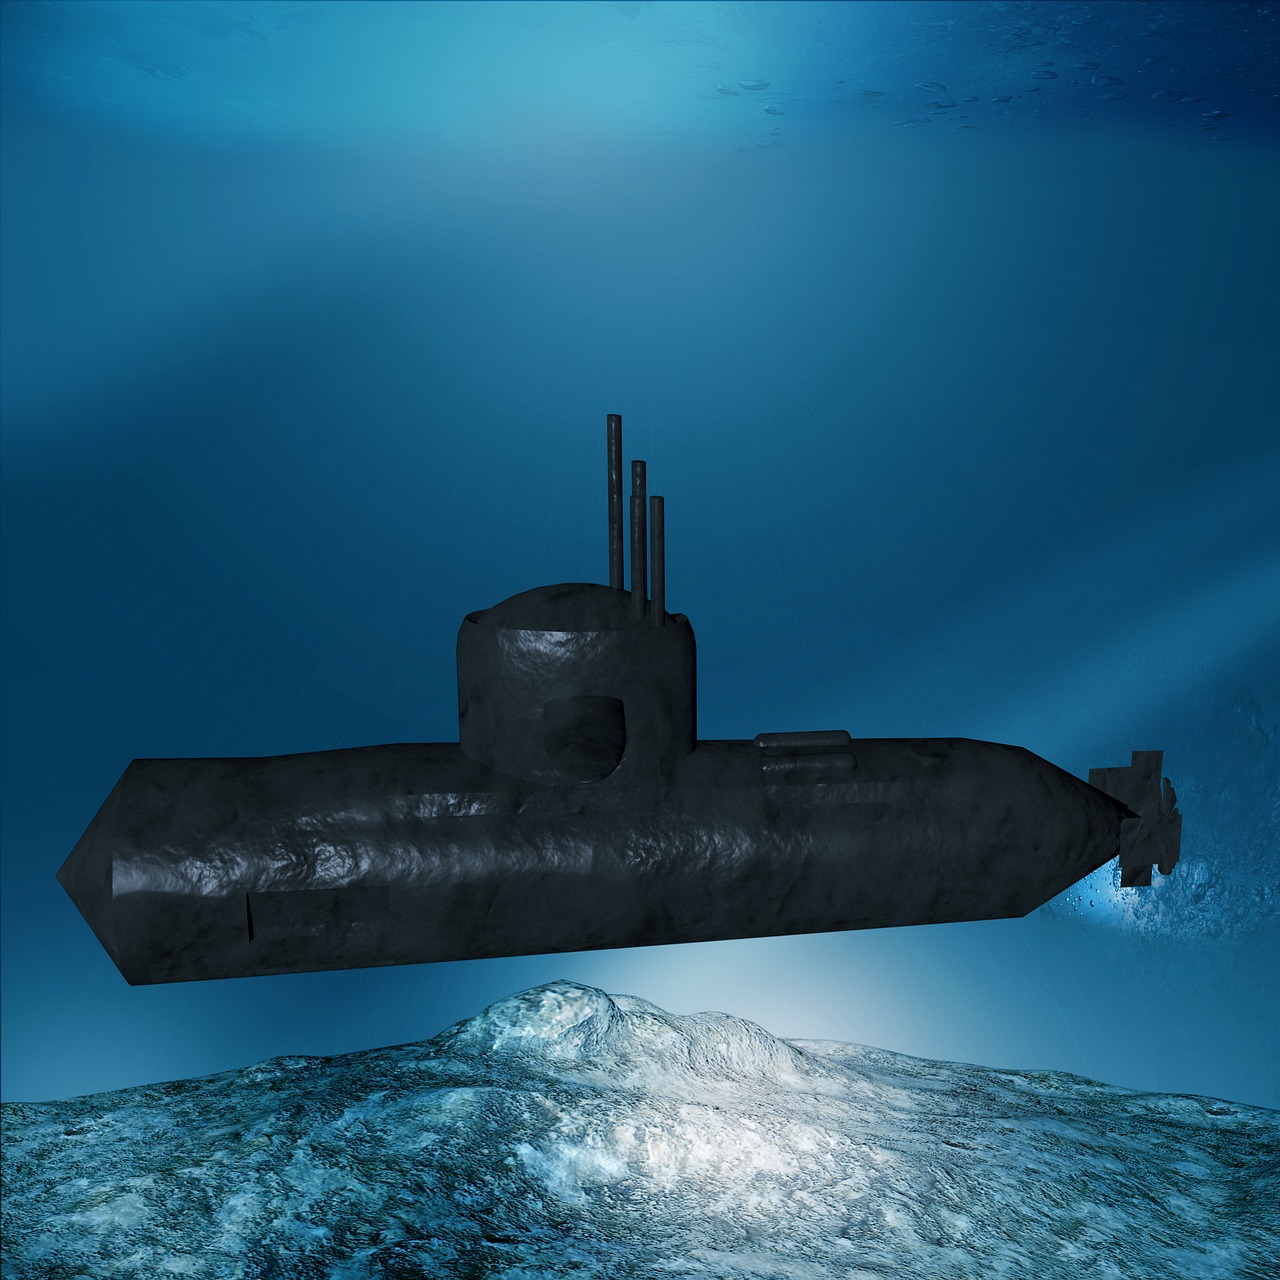 Bomba: Dôkazy odhalujú, že ponorka Titan utrpela katastrofickú implóziu